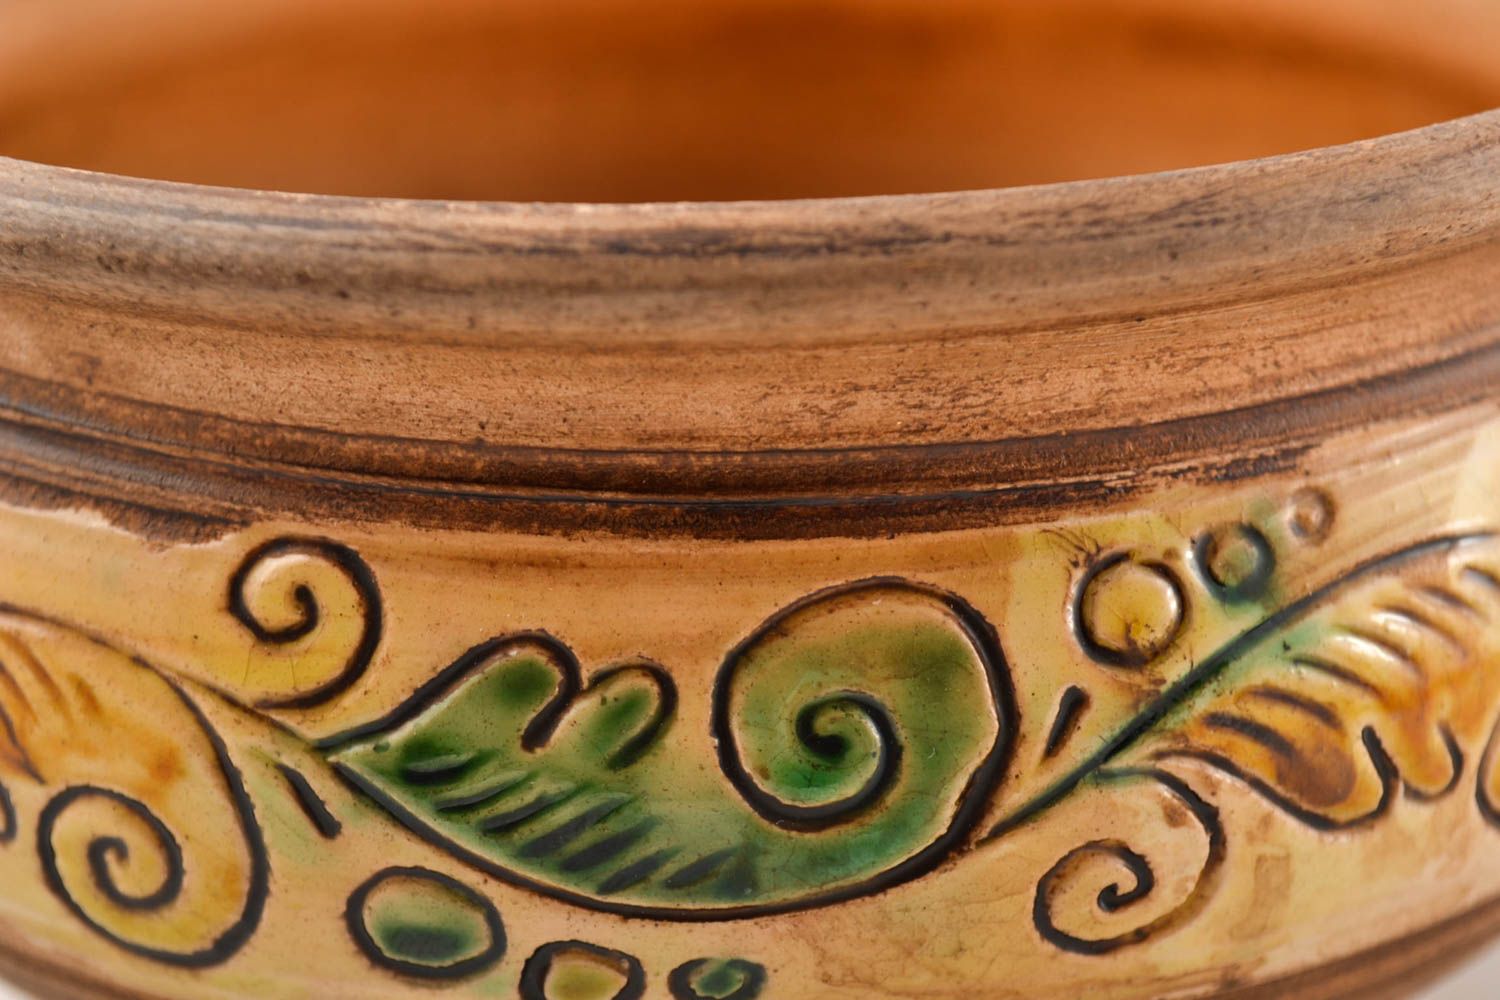 Ceramic bowls 2 ceramic plates handmade stoneware dinnerware dinner dishes photo 3